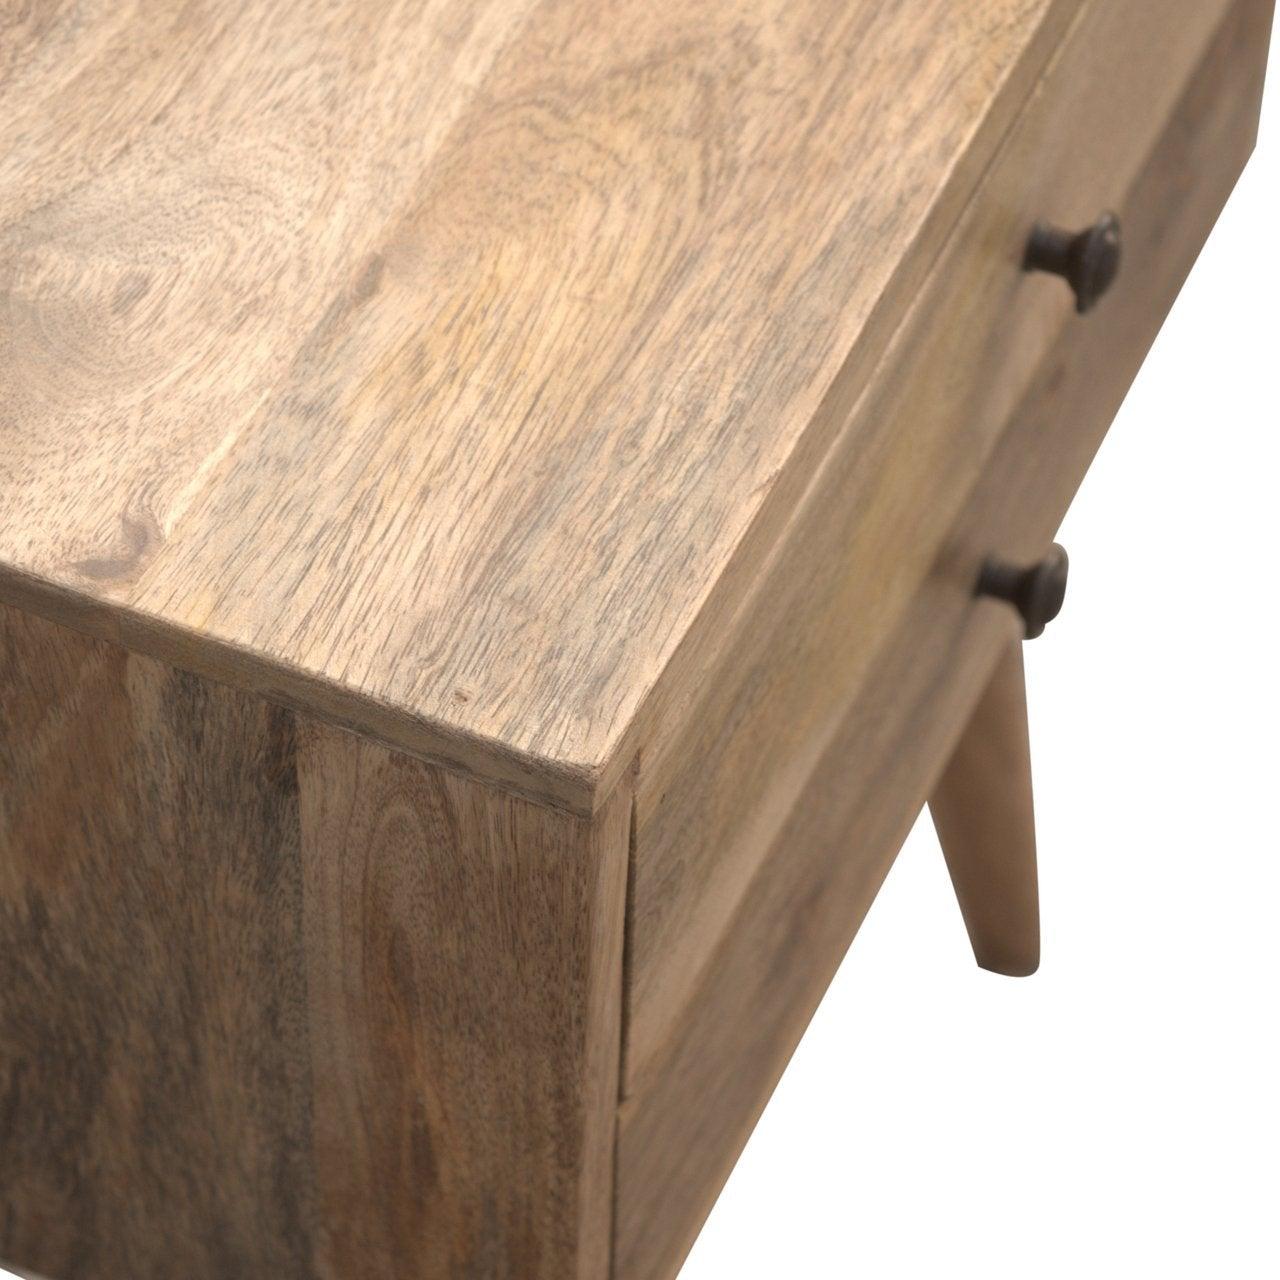 Modern solid wood bedside table - crimblefest furniture - image 7